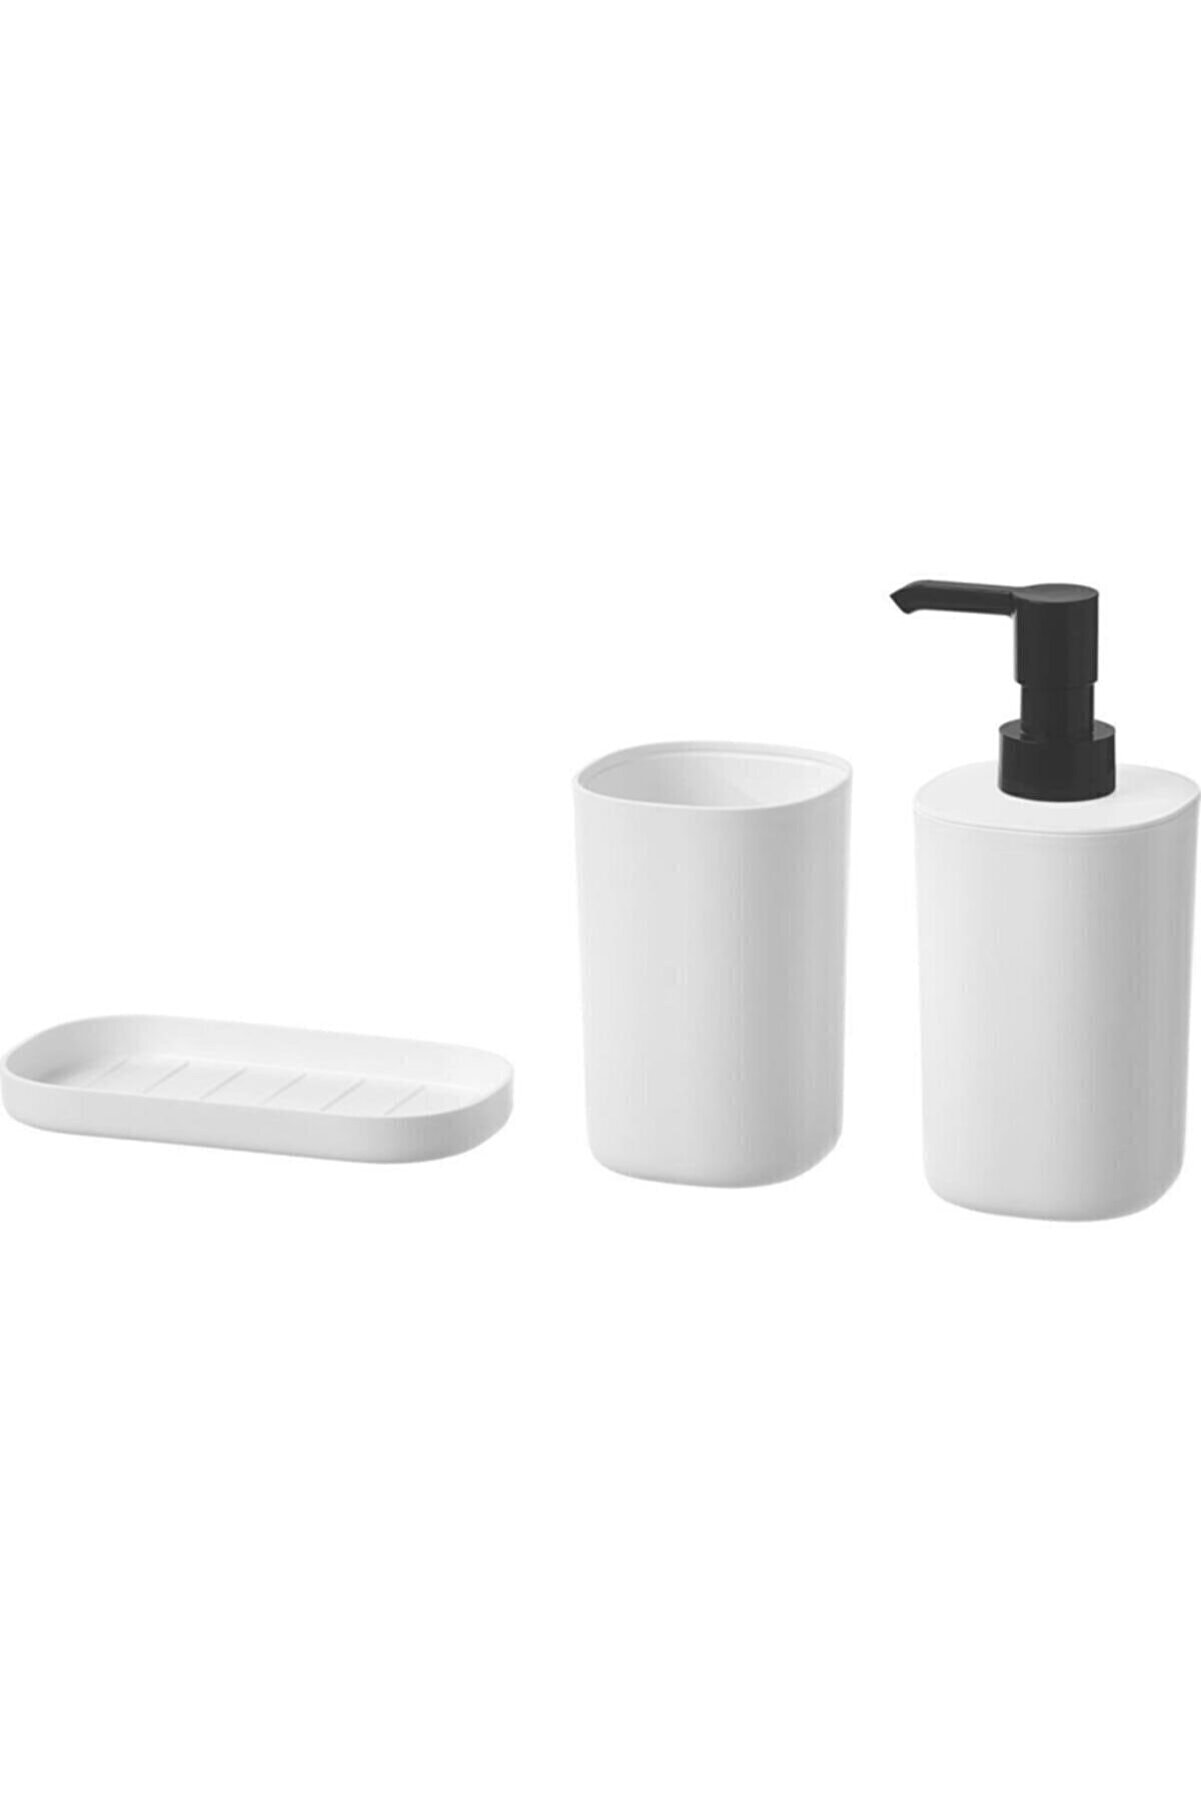 IKEA Storavan Banyo Aksesuar Seti Sıvı Sabunluk Katı Sabunluk Diş Fırçalık 3lü Set